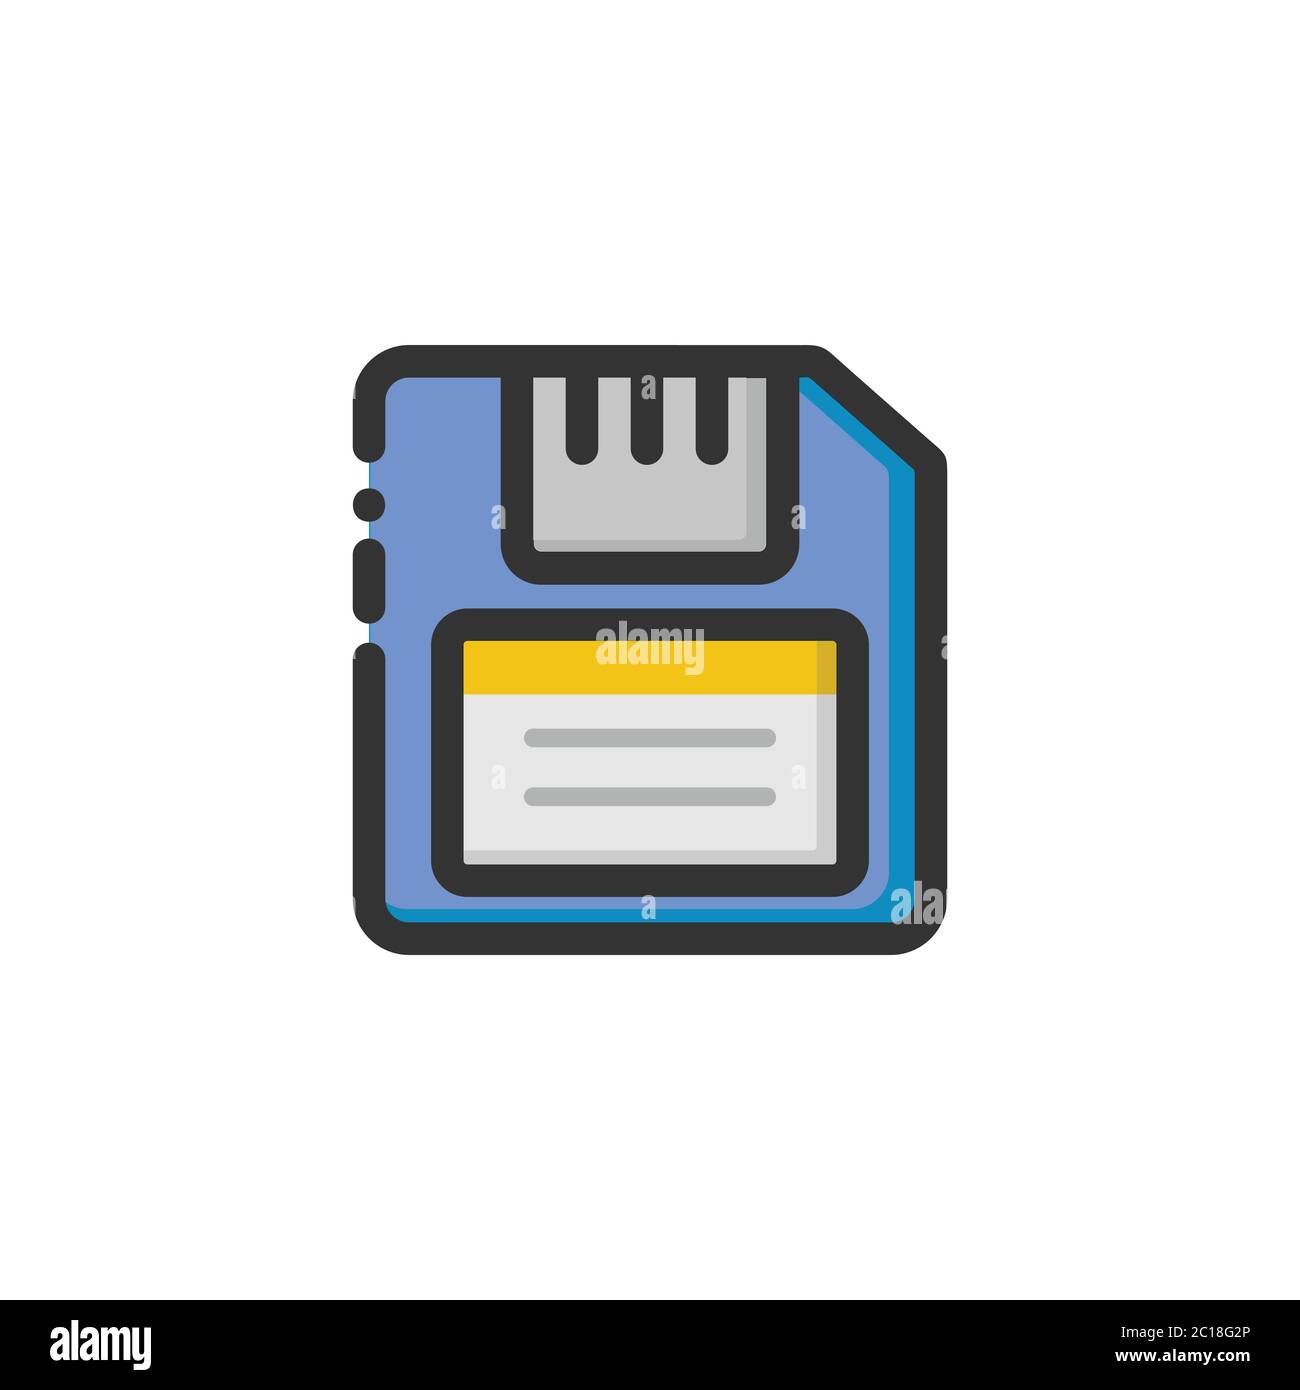 Unità floppy disk semplice e minimalista con struttura audace. Adatto per elementi di progettazione di sistemi informatici di memorizzazione. Illustrazione Vettoriale